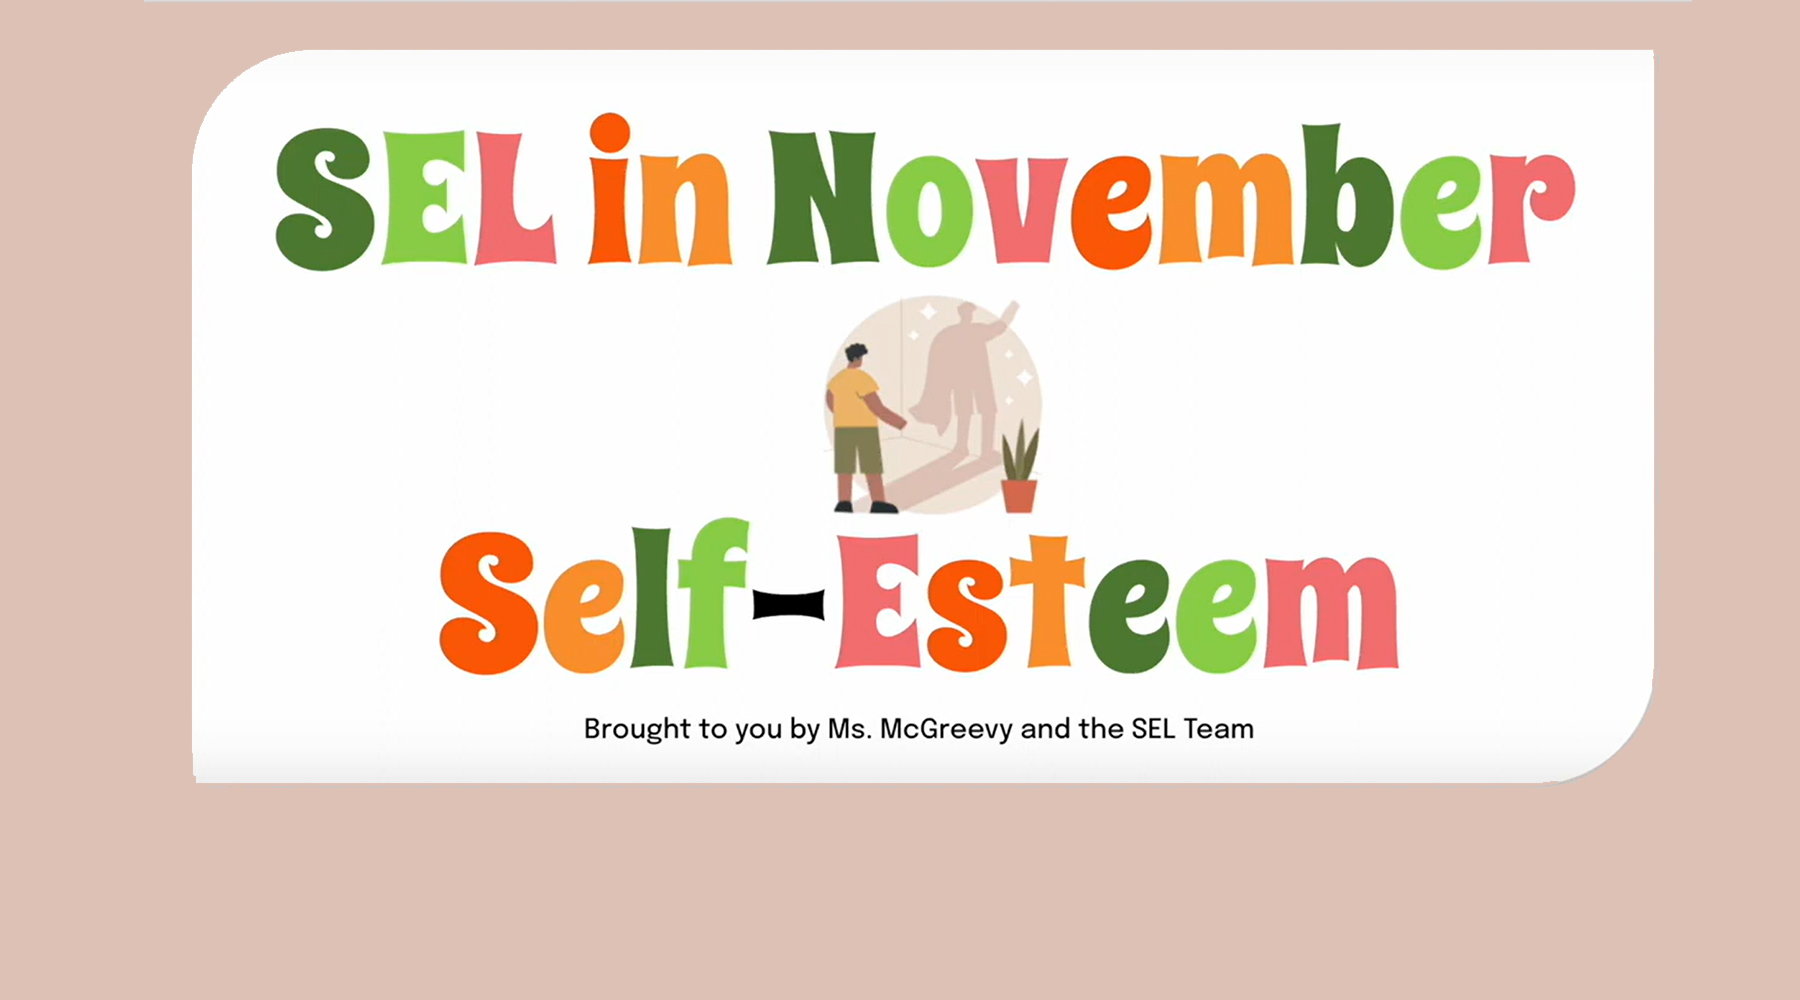 SEL in November - Self-Esteem